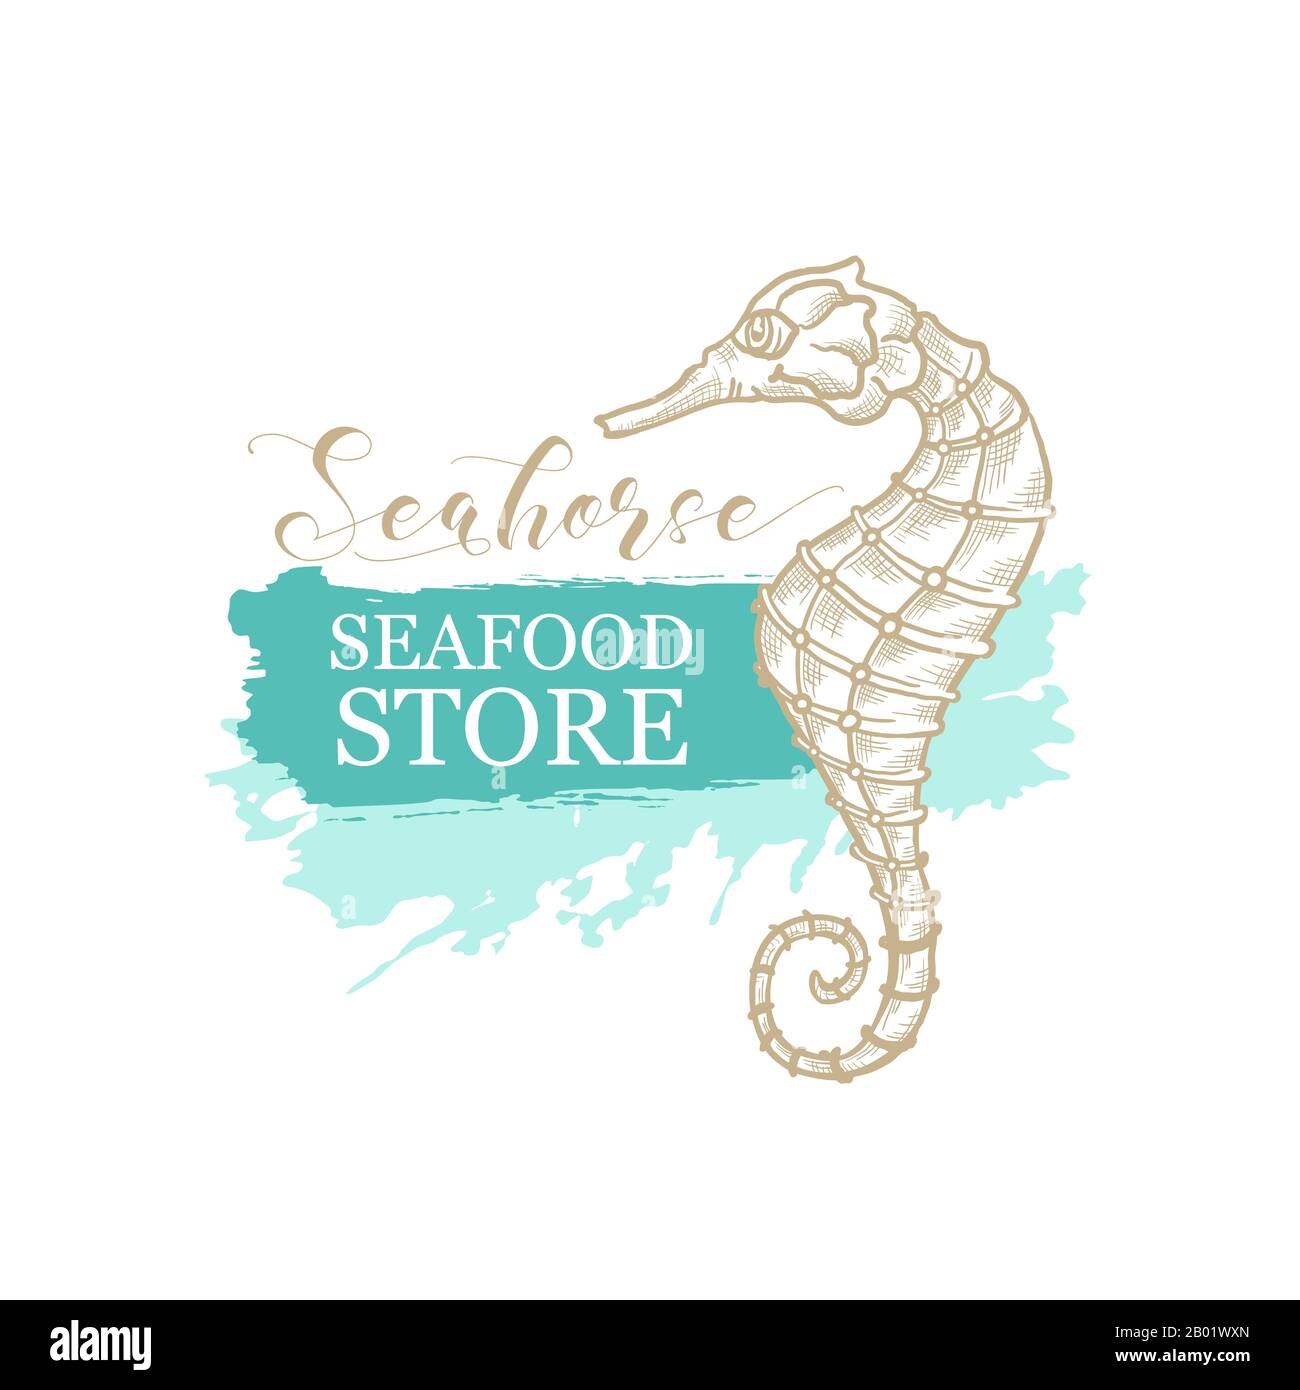 Dessin d'art vectoriel en ligne fine Seahorse pour le magasin de fruits de mer et le logo du marché du poisson. Cheval de mer à l'éclosion de crayon doré, calligraphie et texture d'esquisse sur fond de trait de peinture vert marin ou turquoise Illustration de Vecteur